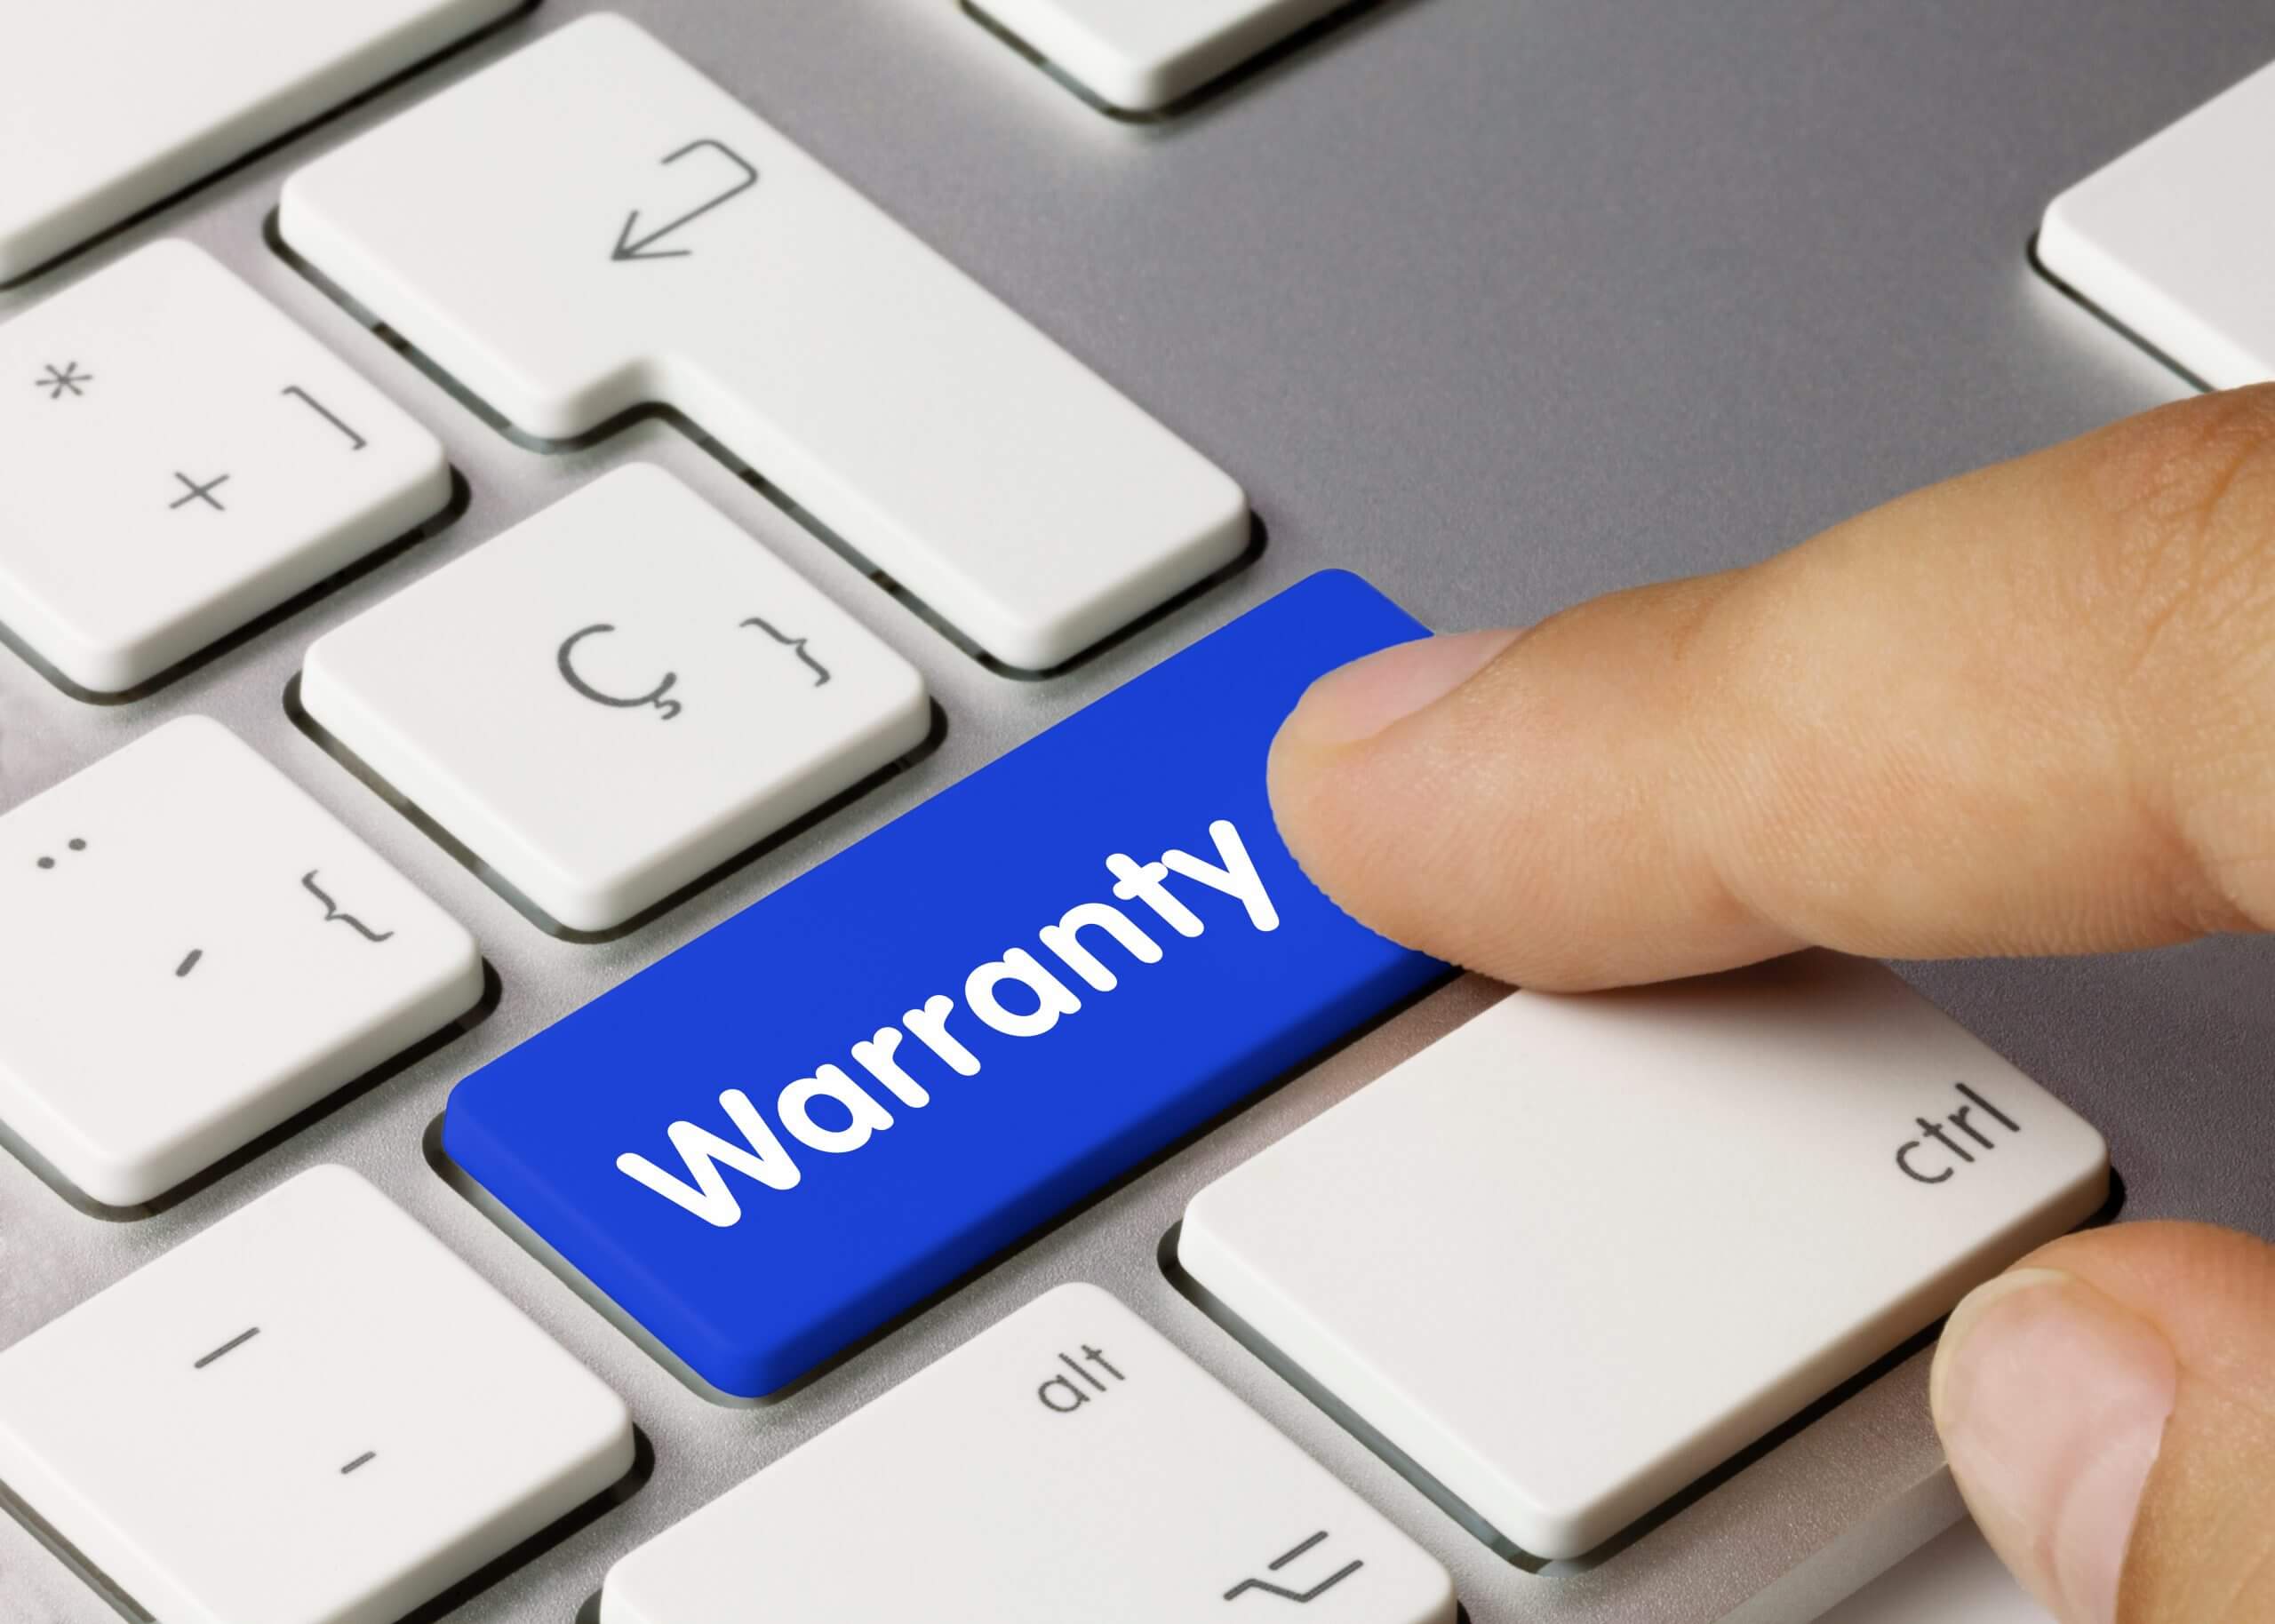 key board keys with the word Warranty